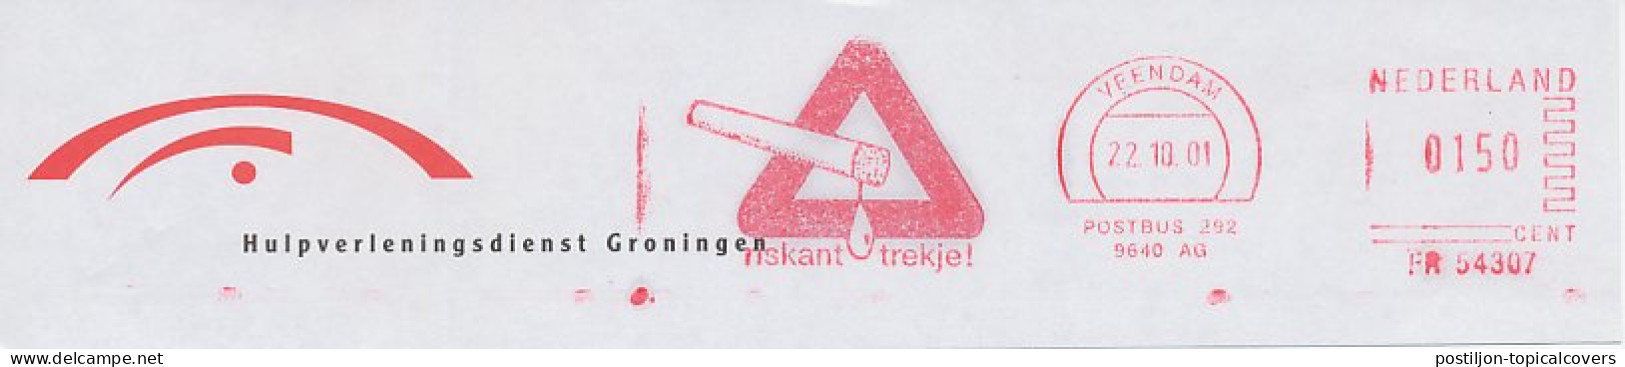 Meter Top Cut Netherlands 2001 Cigarette - Risky Drag - Tabacco